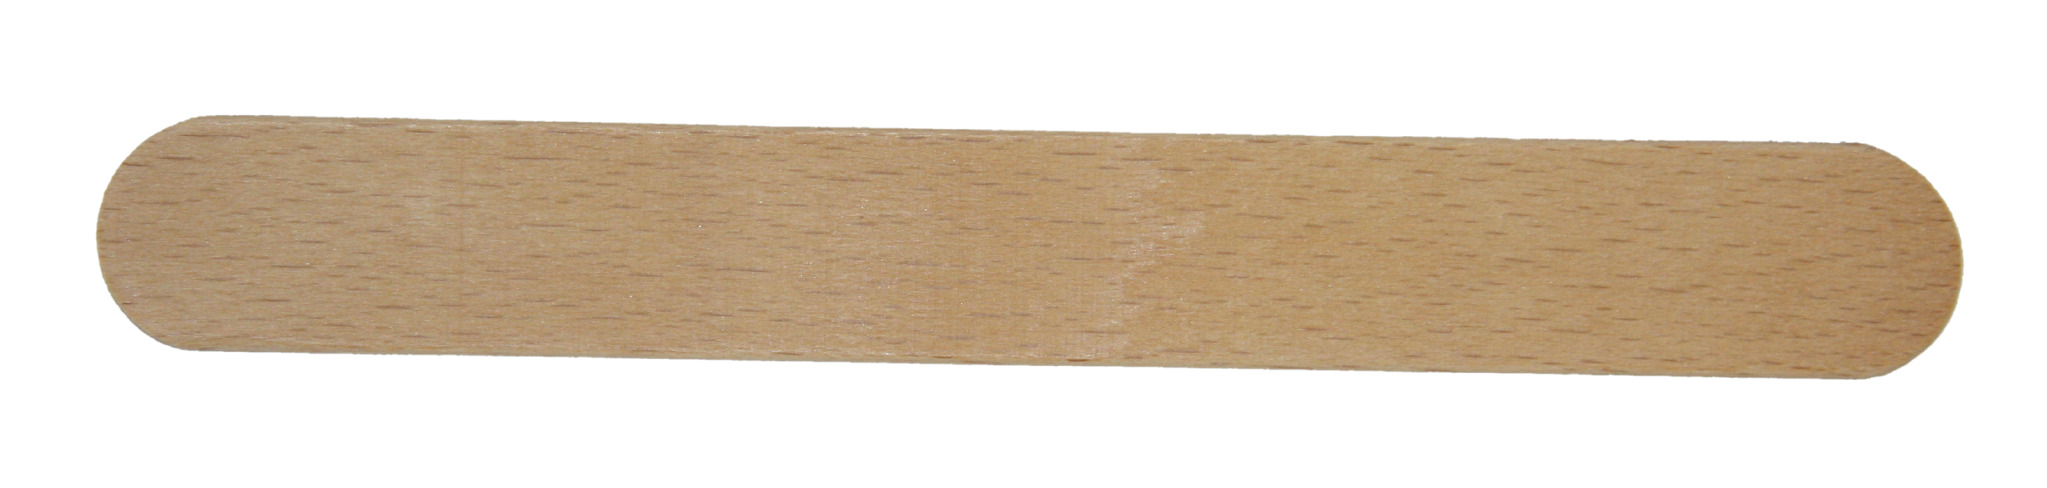 Createc houten roerstokjes, 20 stuks